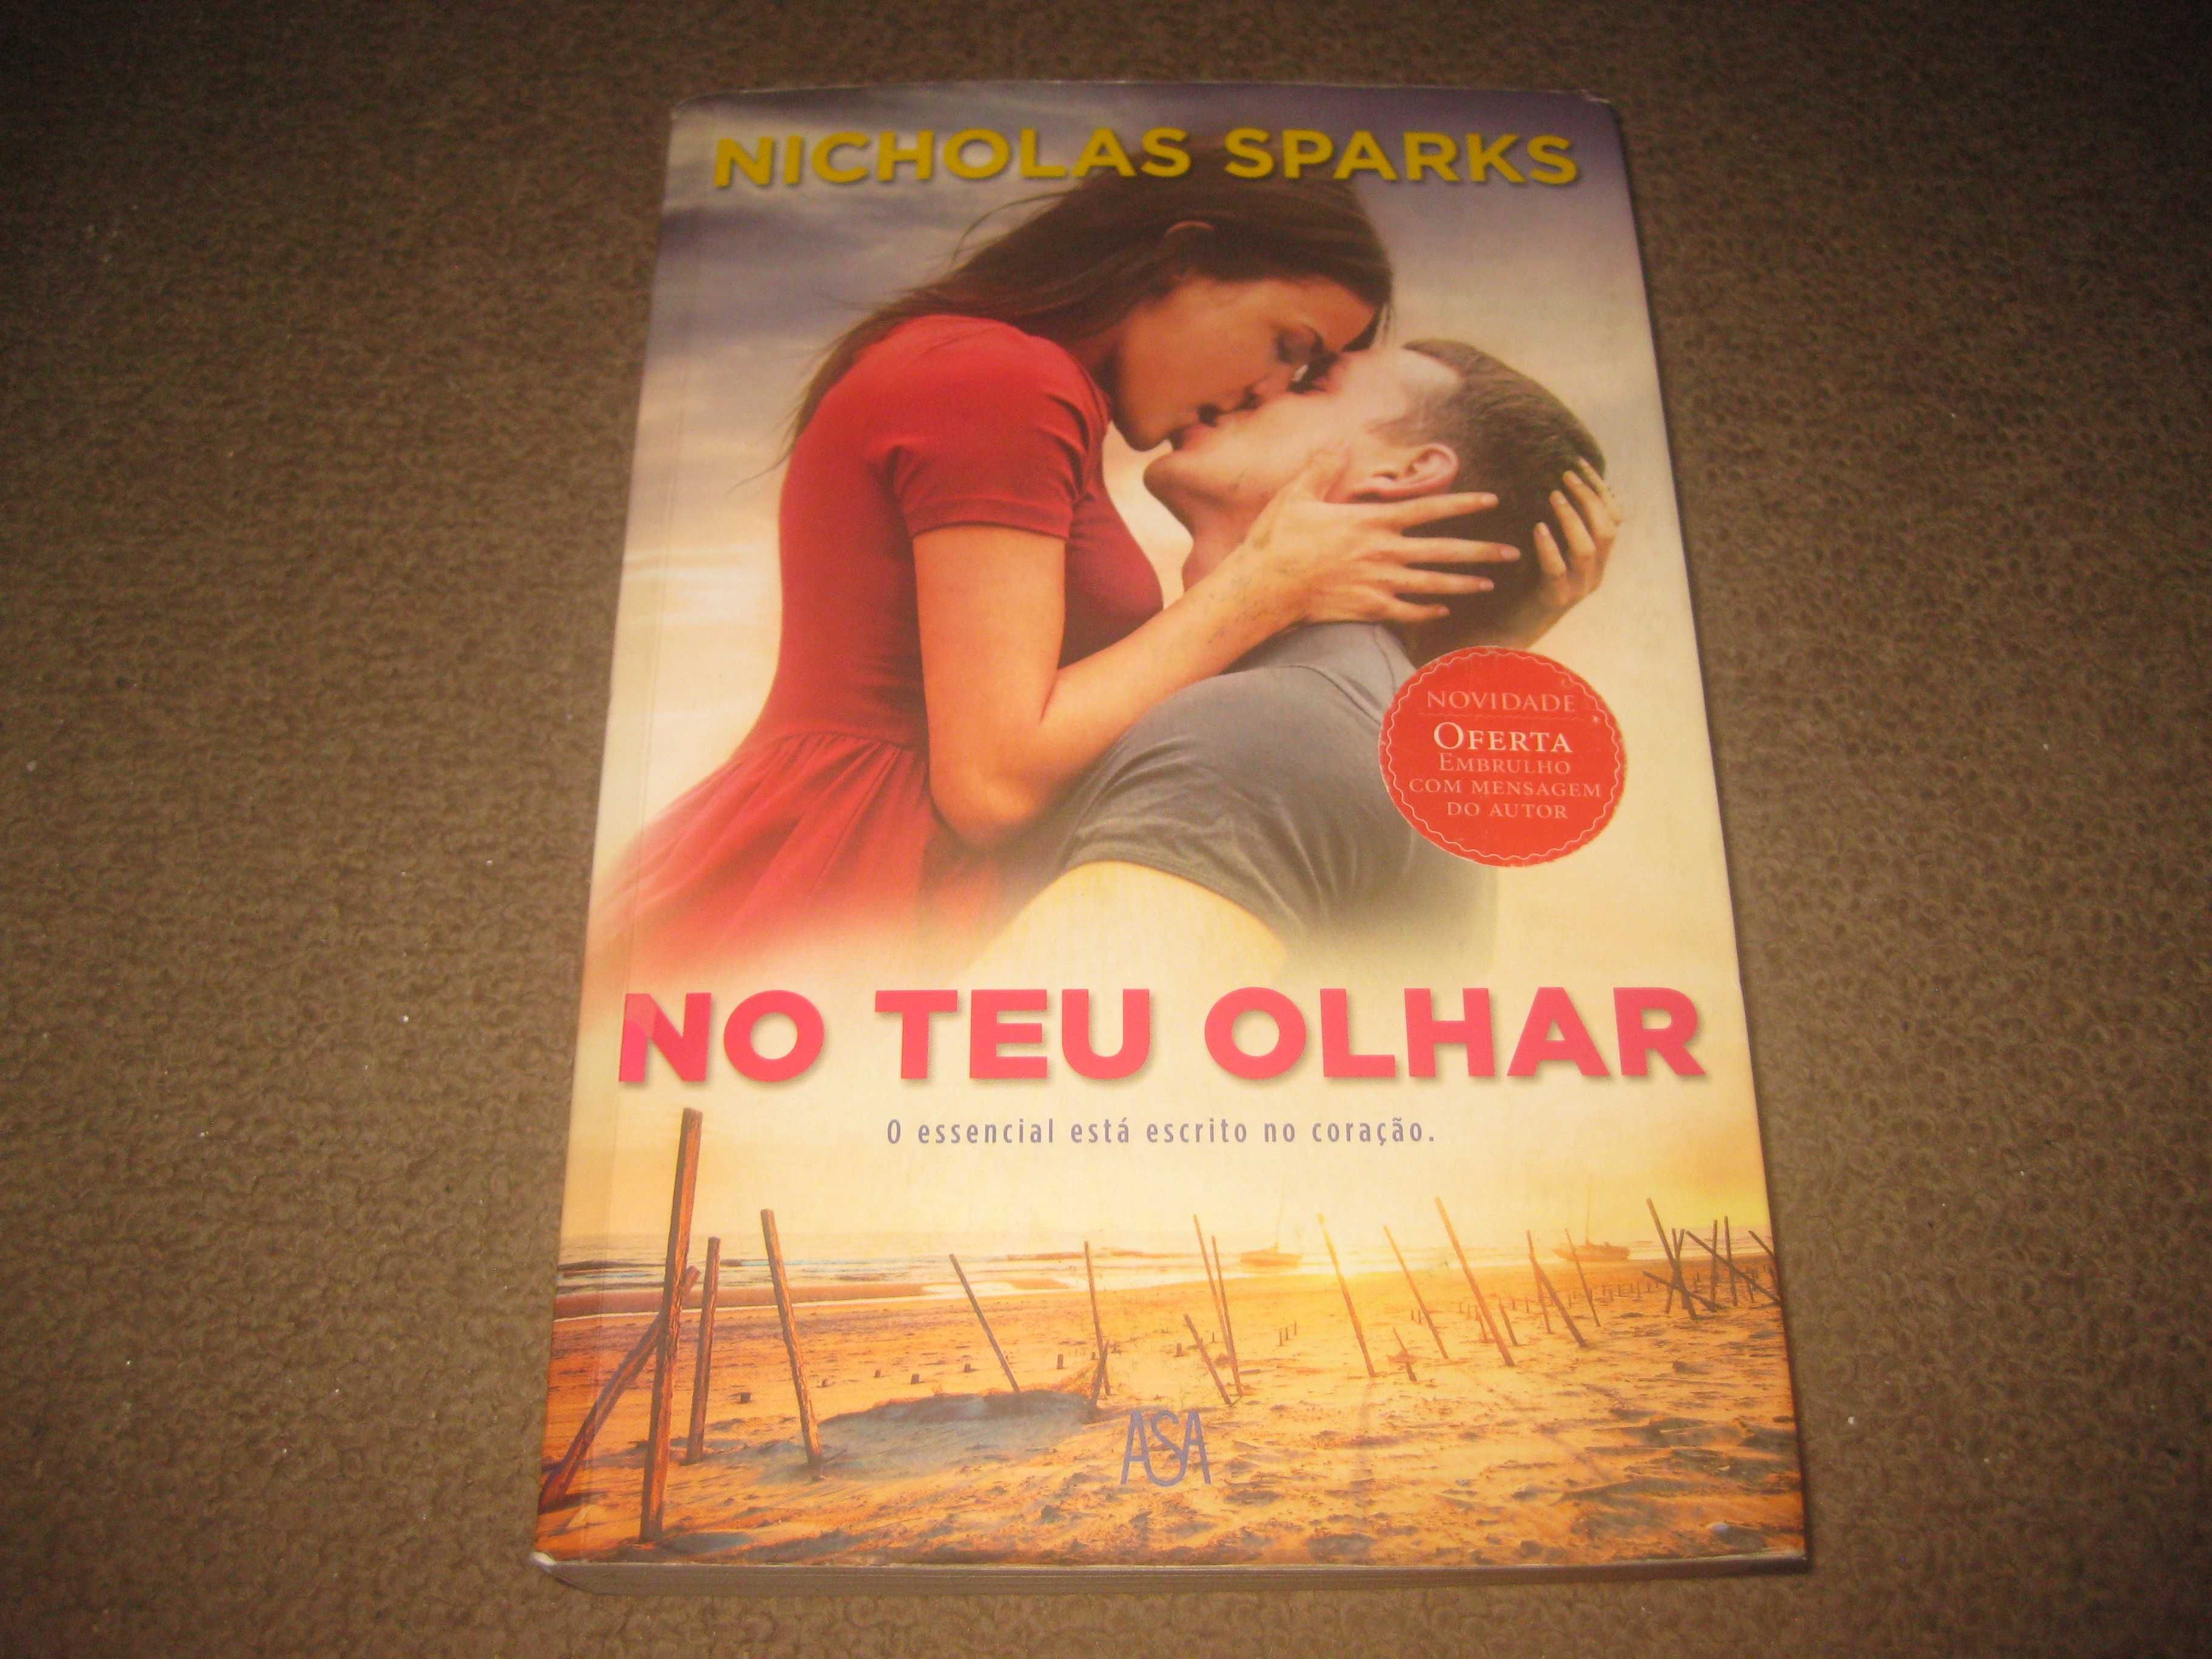 Livro "No Teu Olhar" de Nicholas Sparks